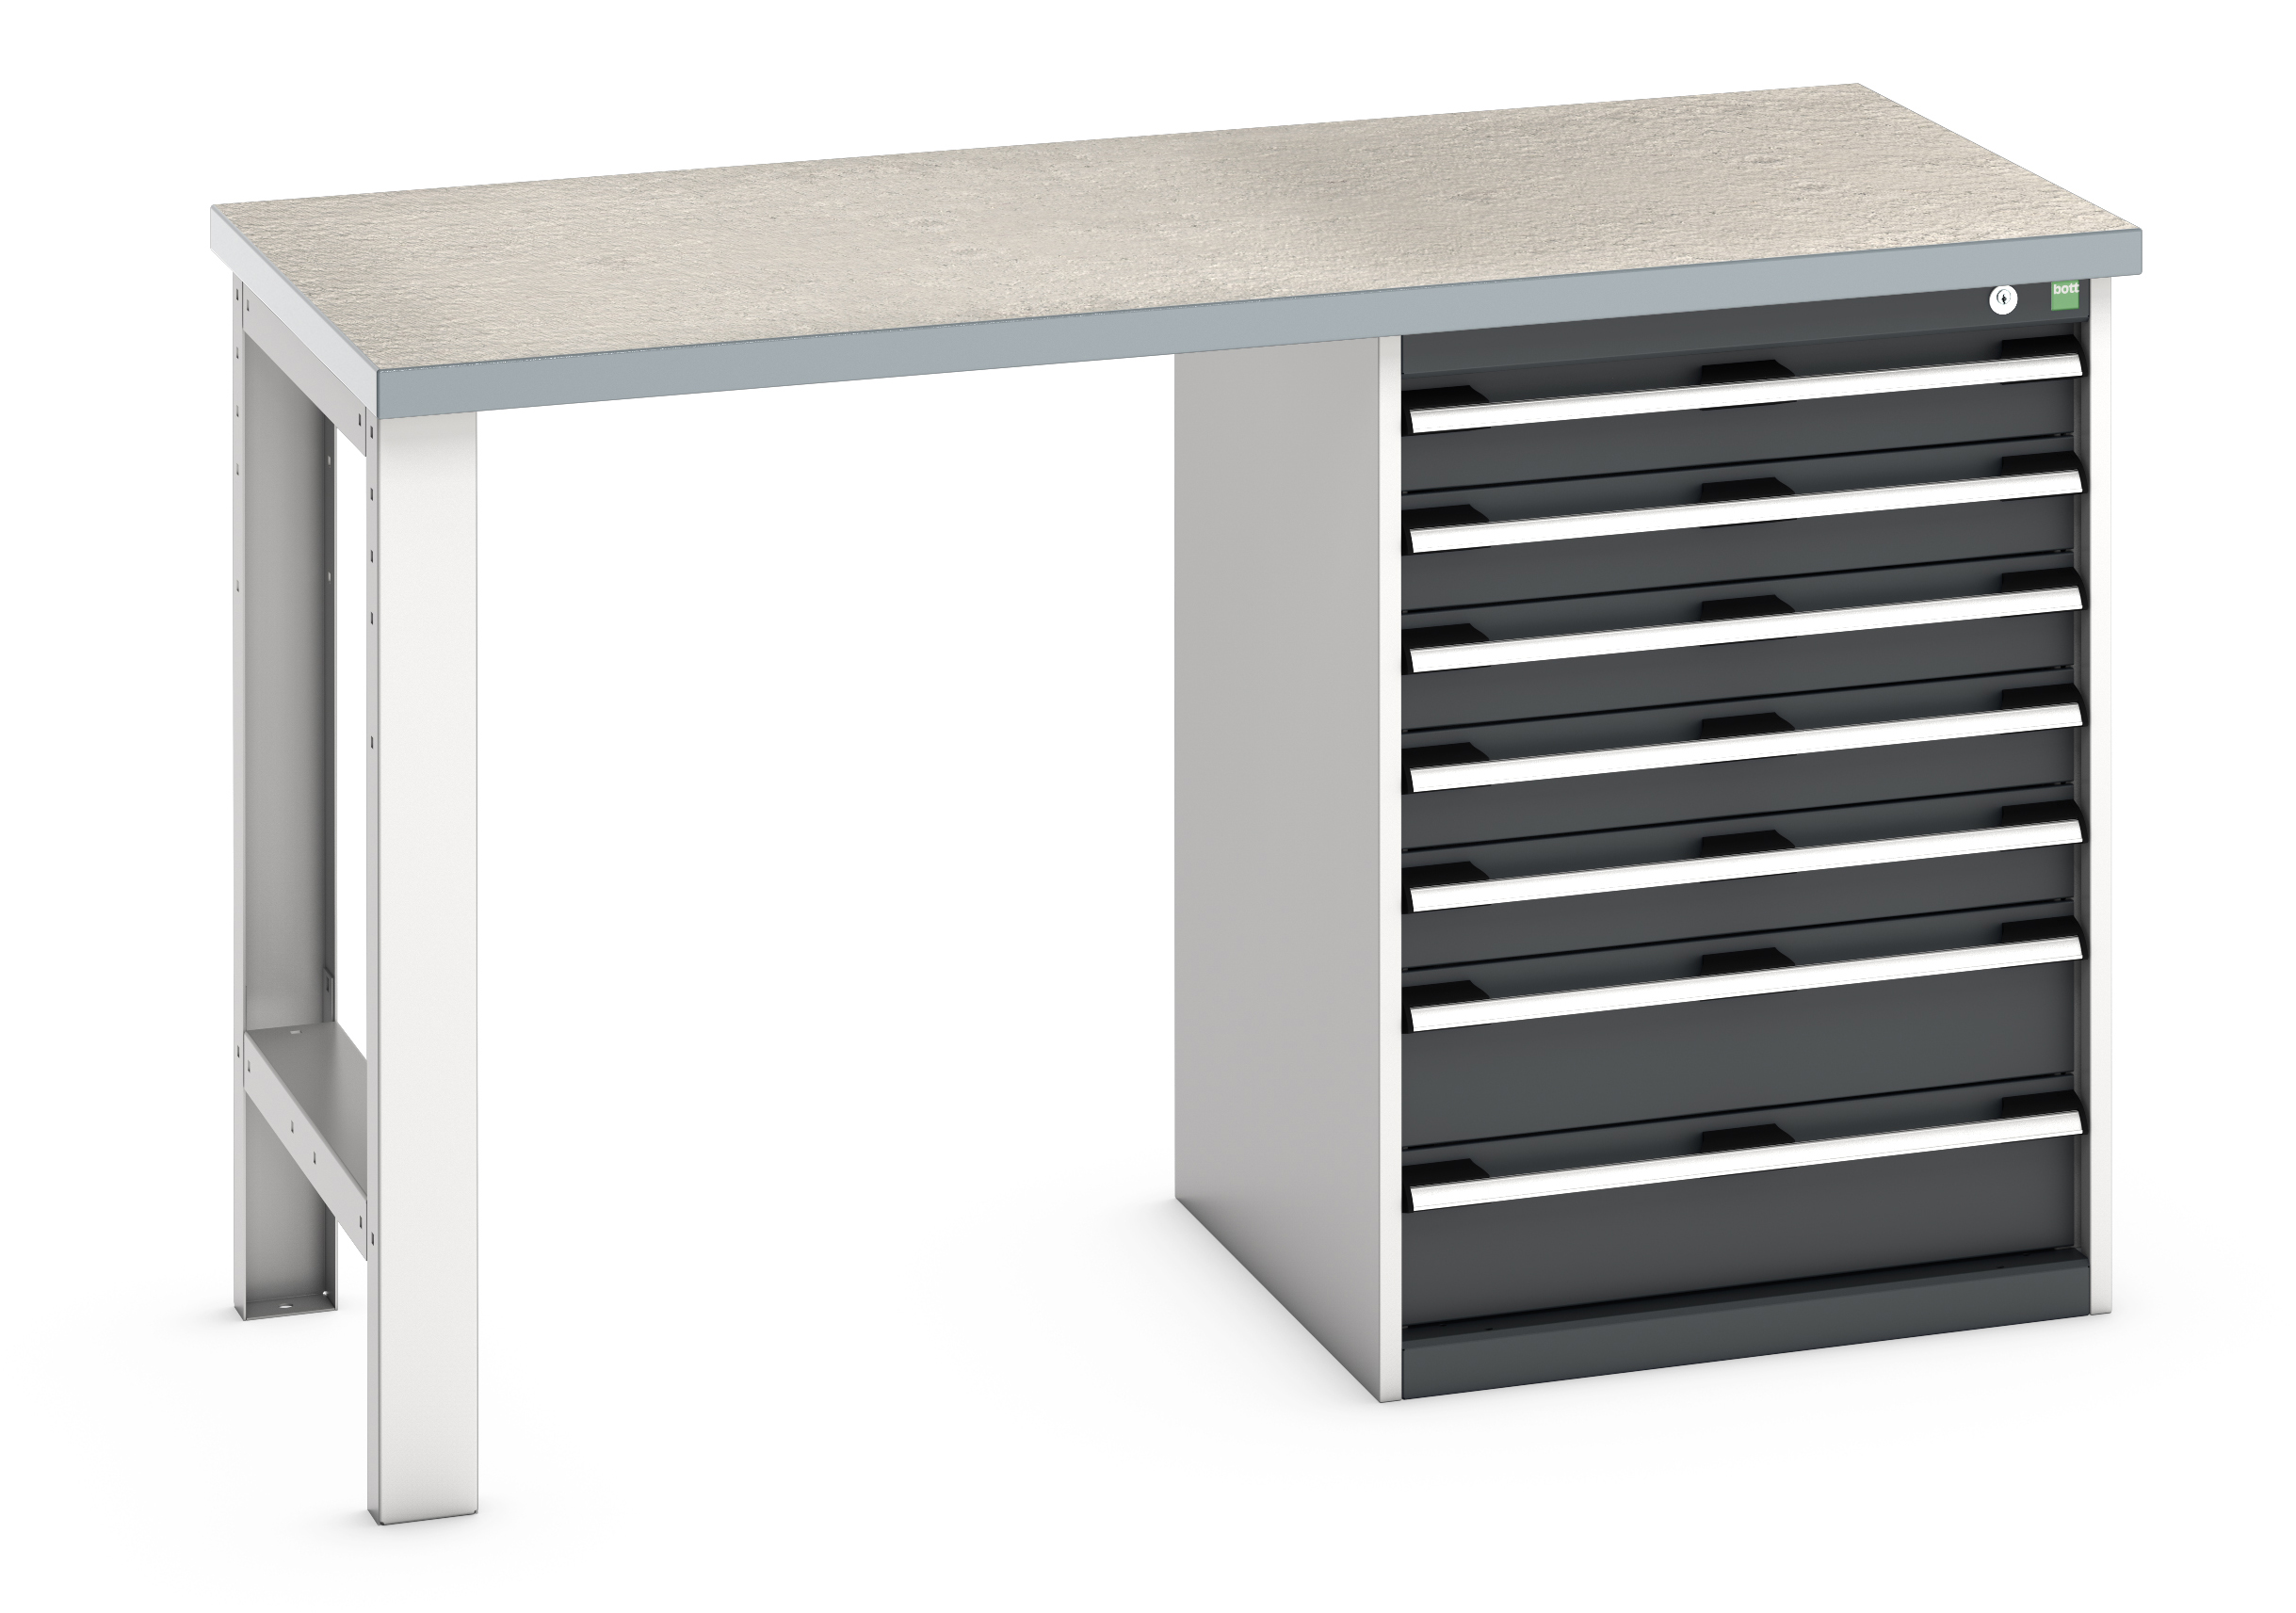 Bott Cubio Pedestal Bench With 7 Drawer Cabinet - 41003497.19V